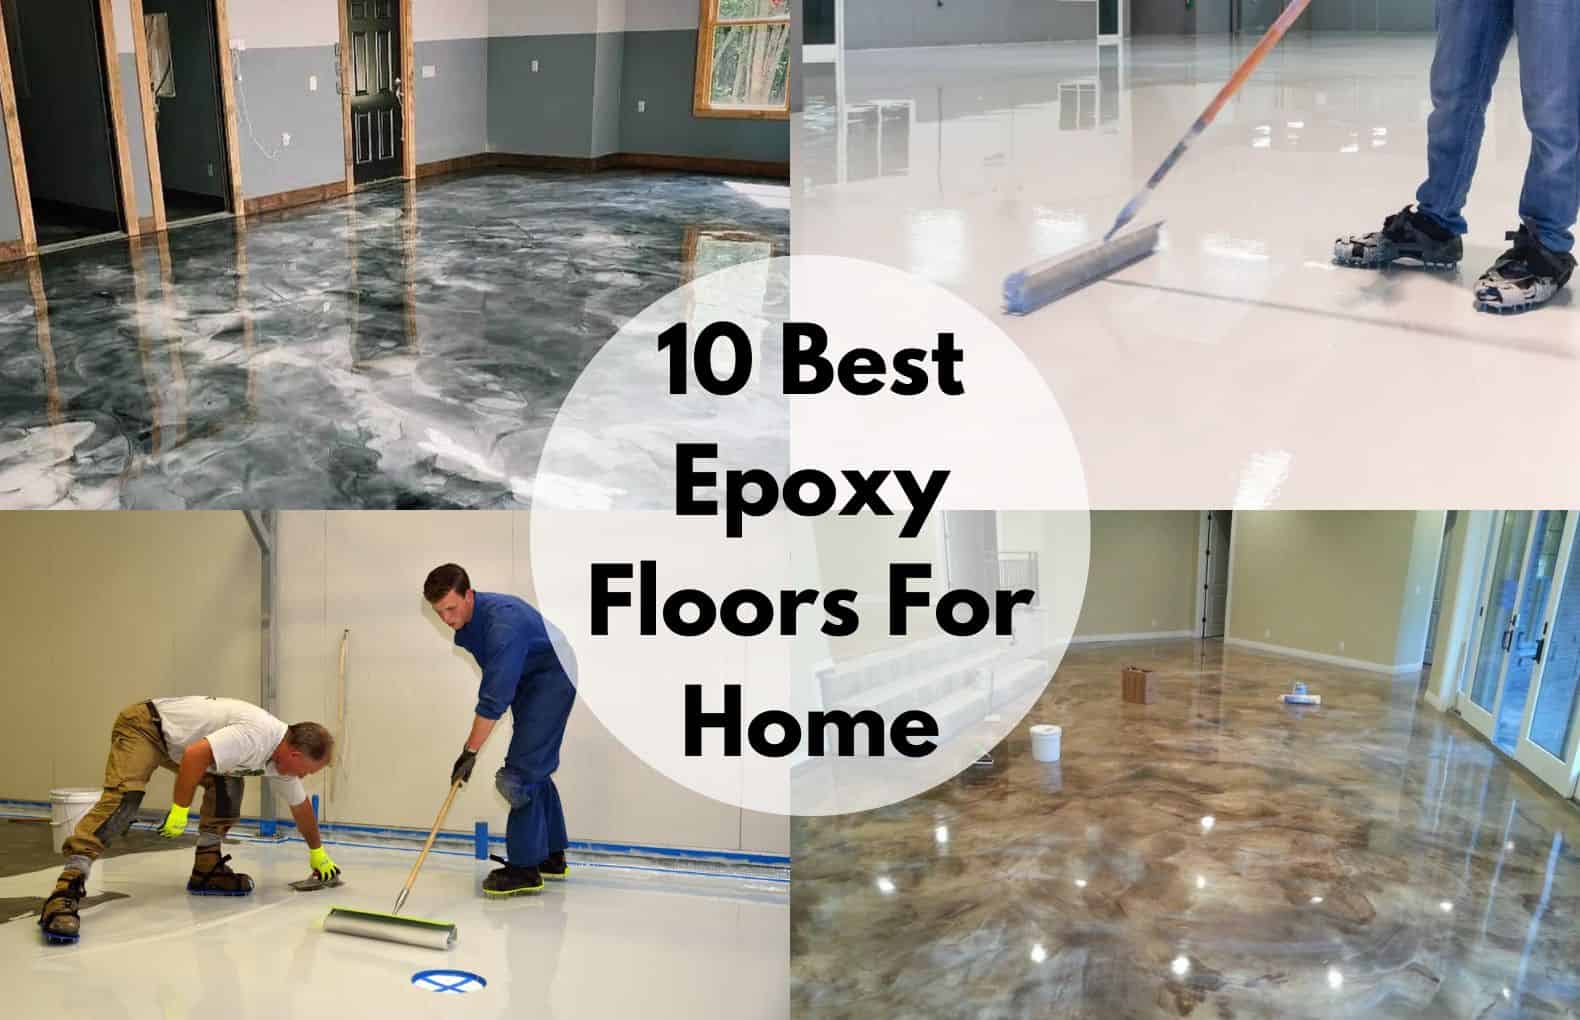 Epoxy Flooring Toronto Price